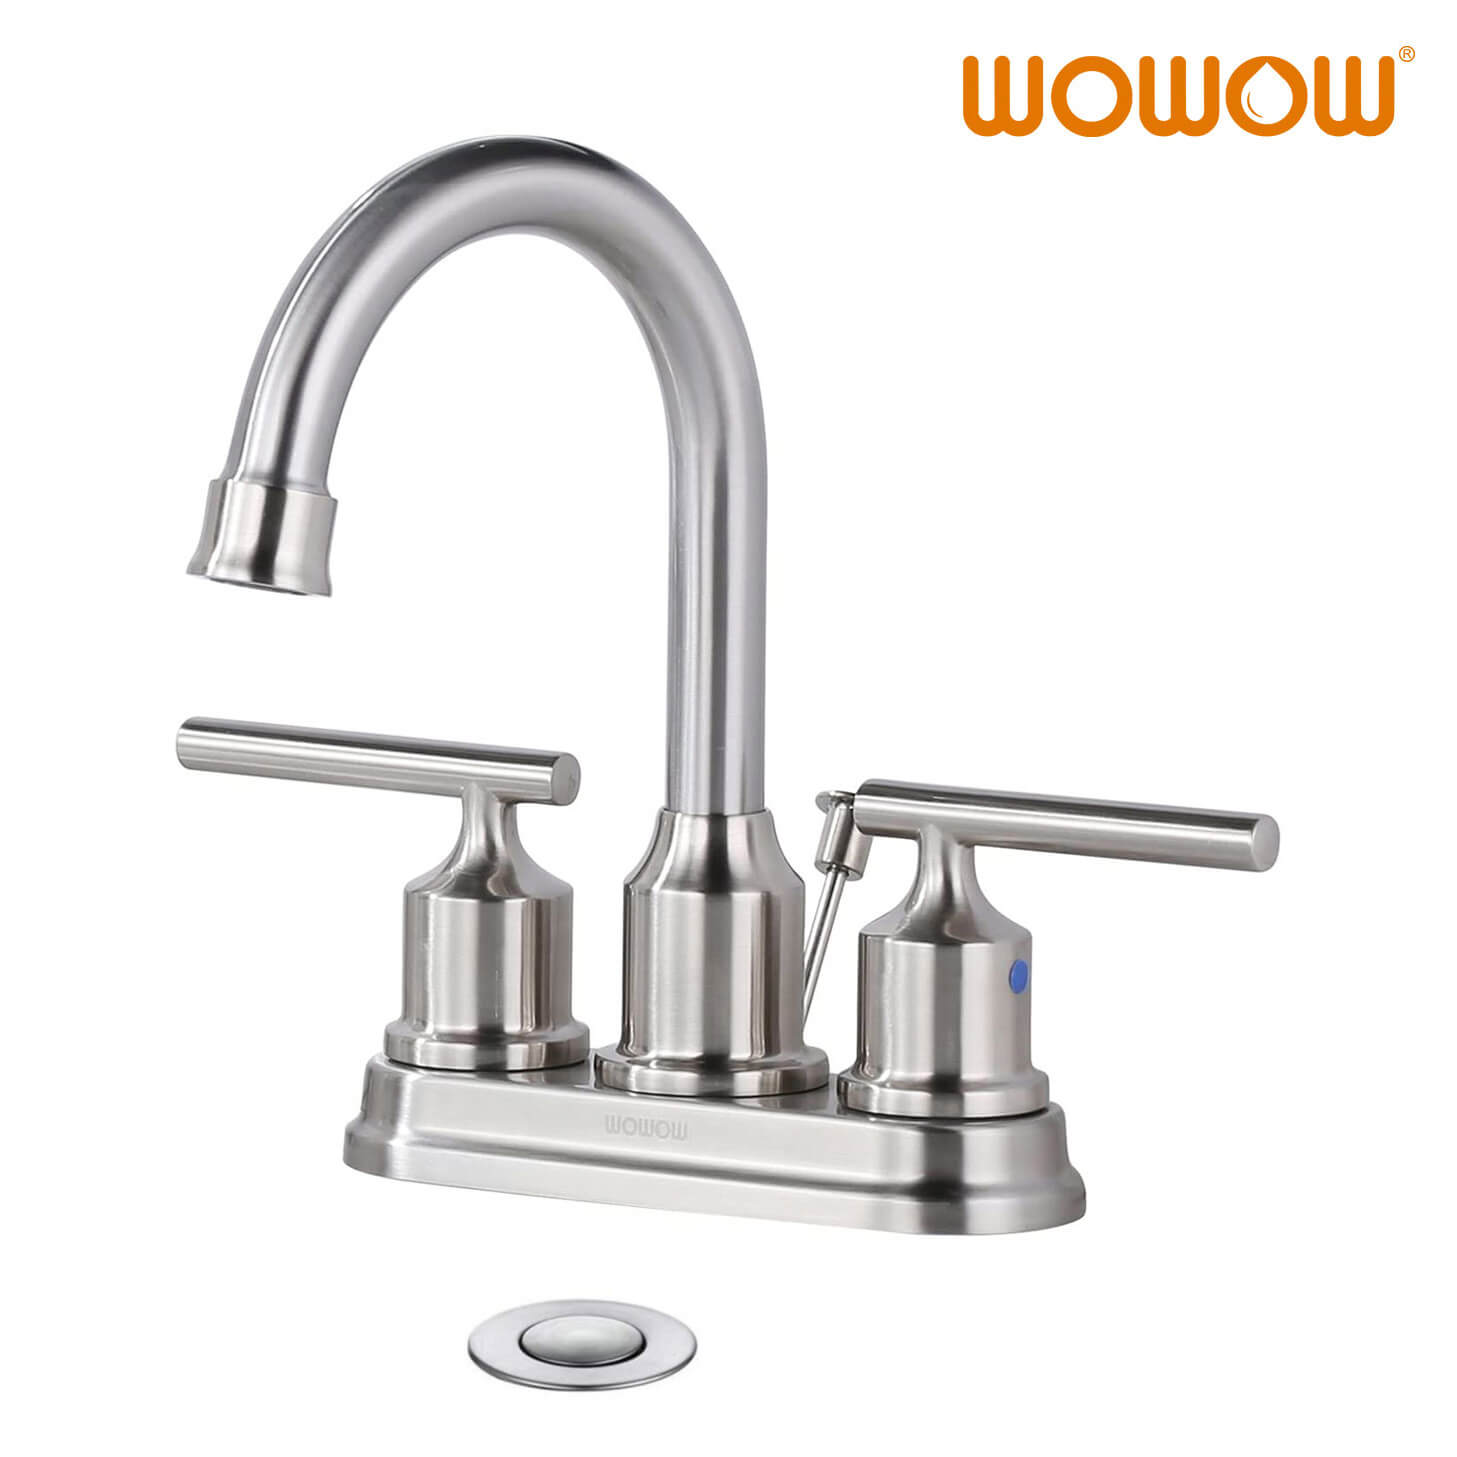 wowow-4-inch-centerset-bathroom-faucet-3-umngxuma-brush-nickel-igumbi lokuhlambela-isinki-ifaucet